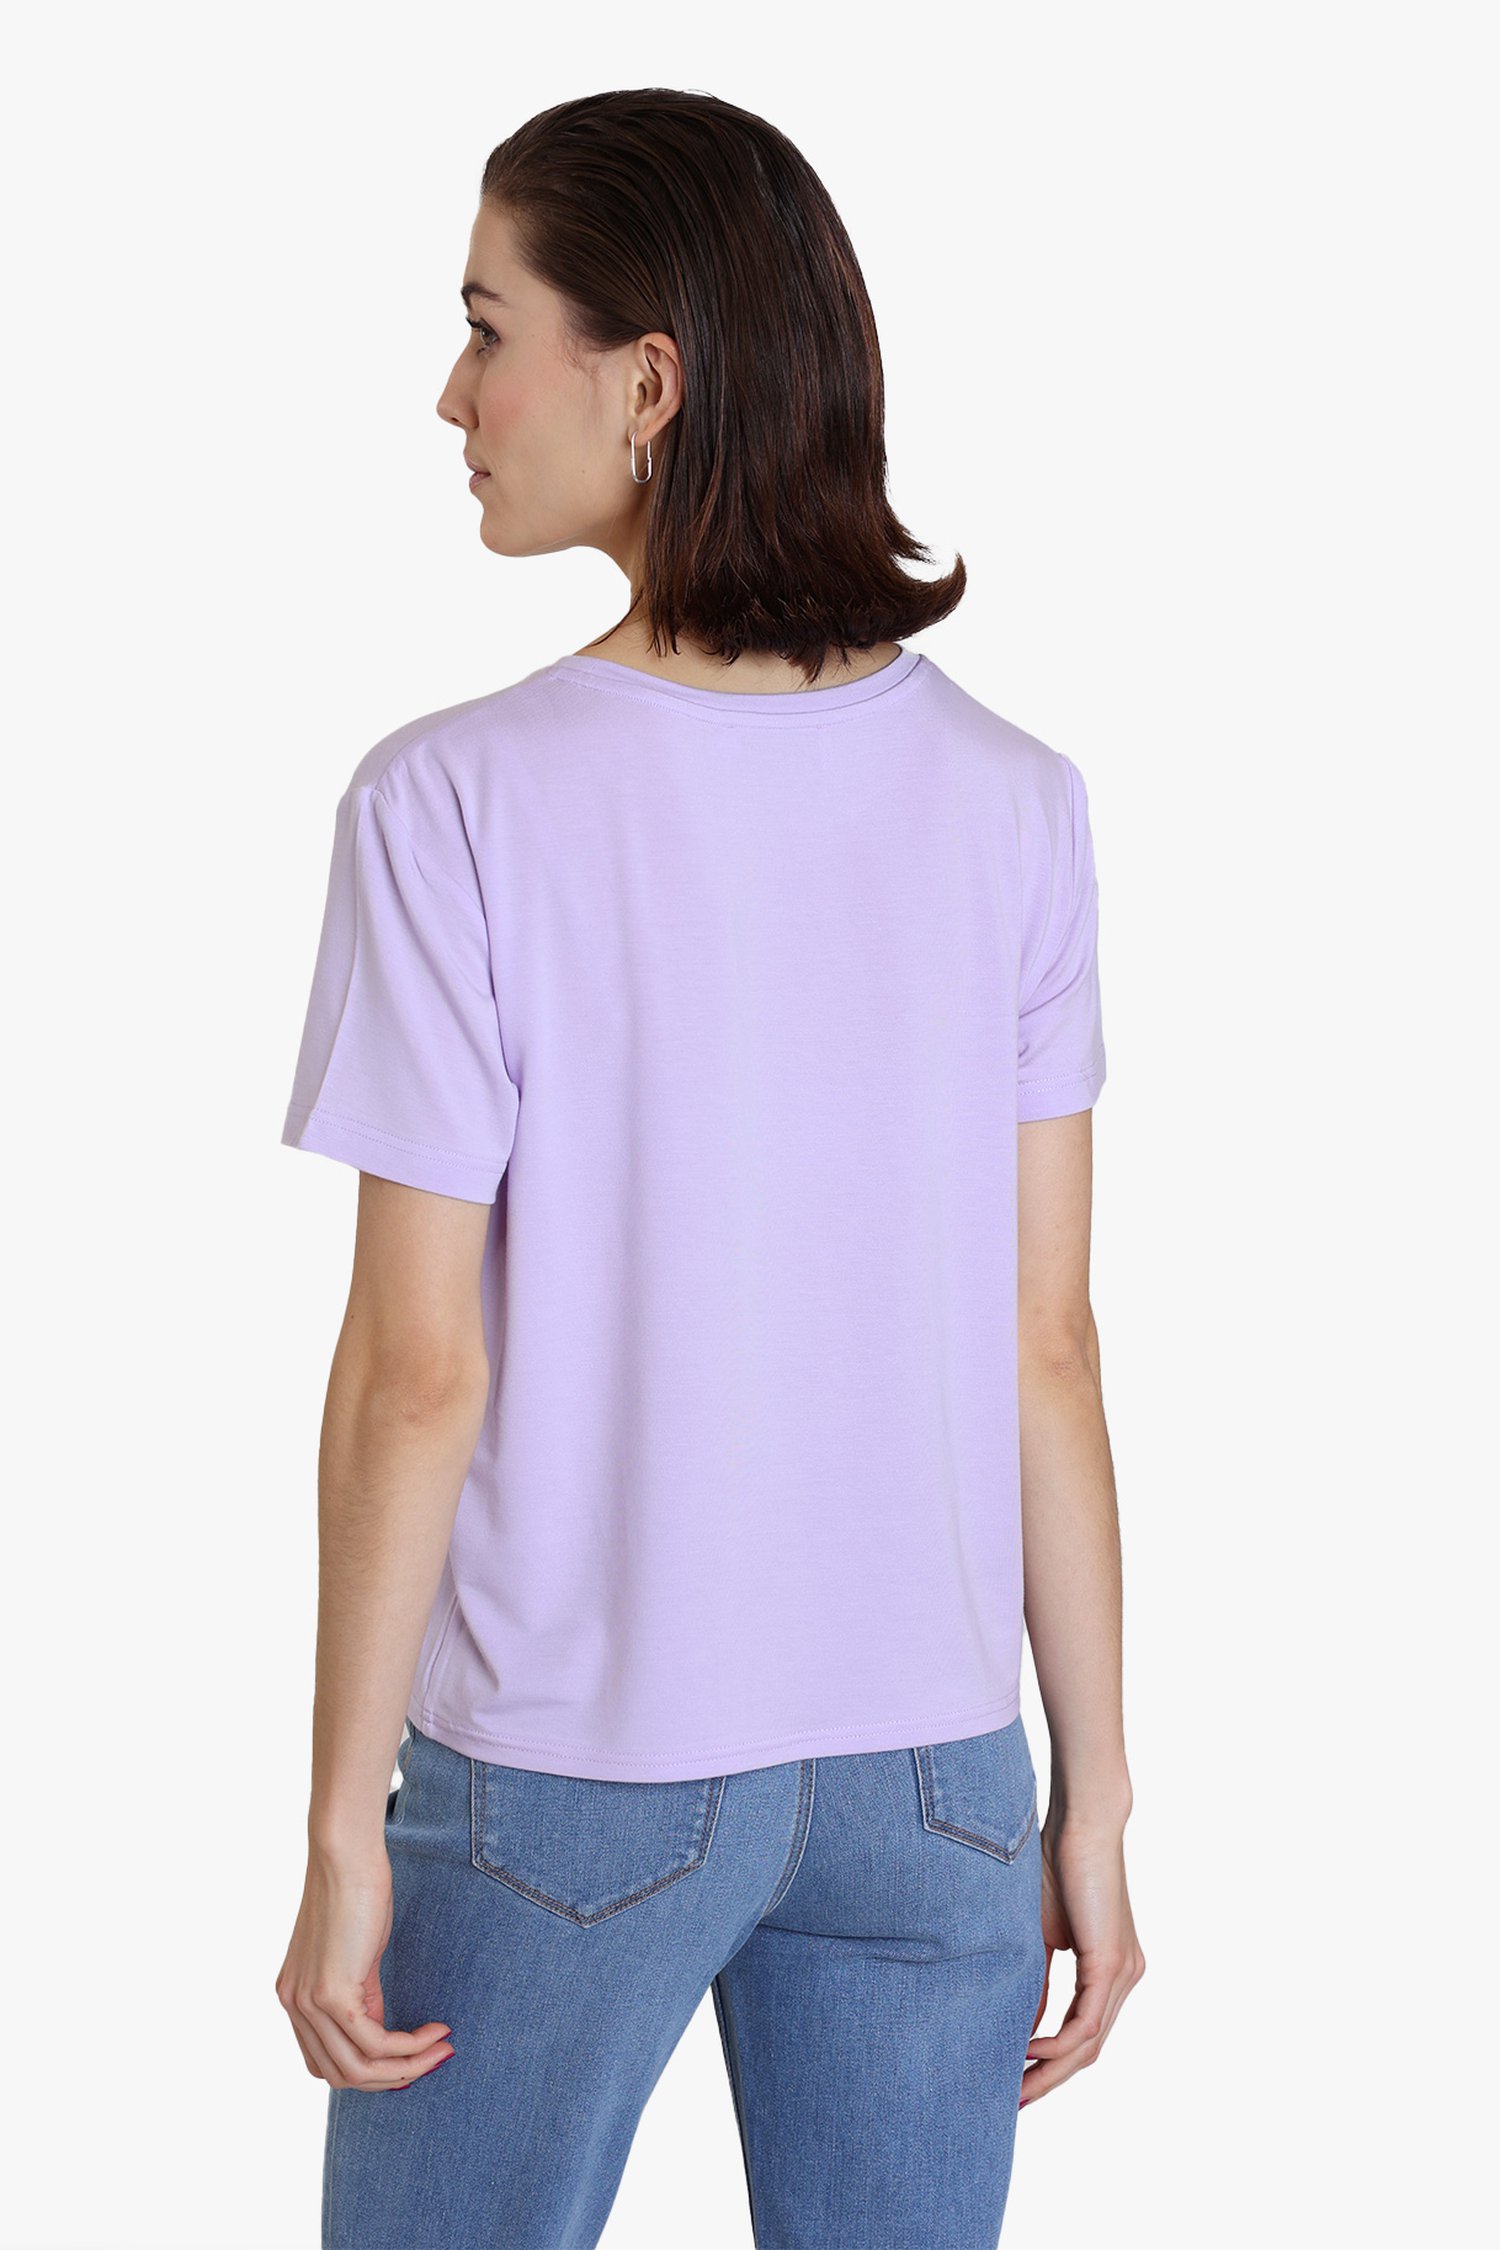 Lila T-shirt van Louise | 5995307 | e5